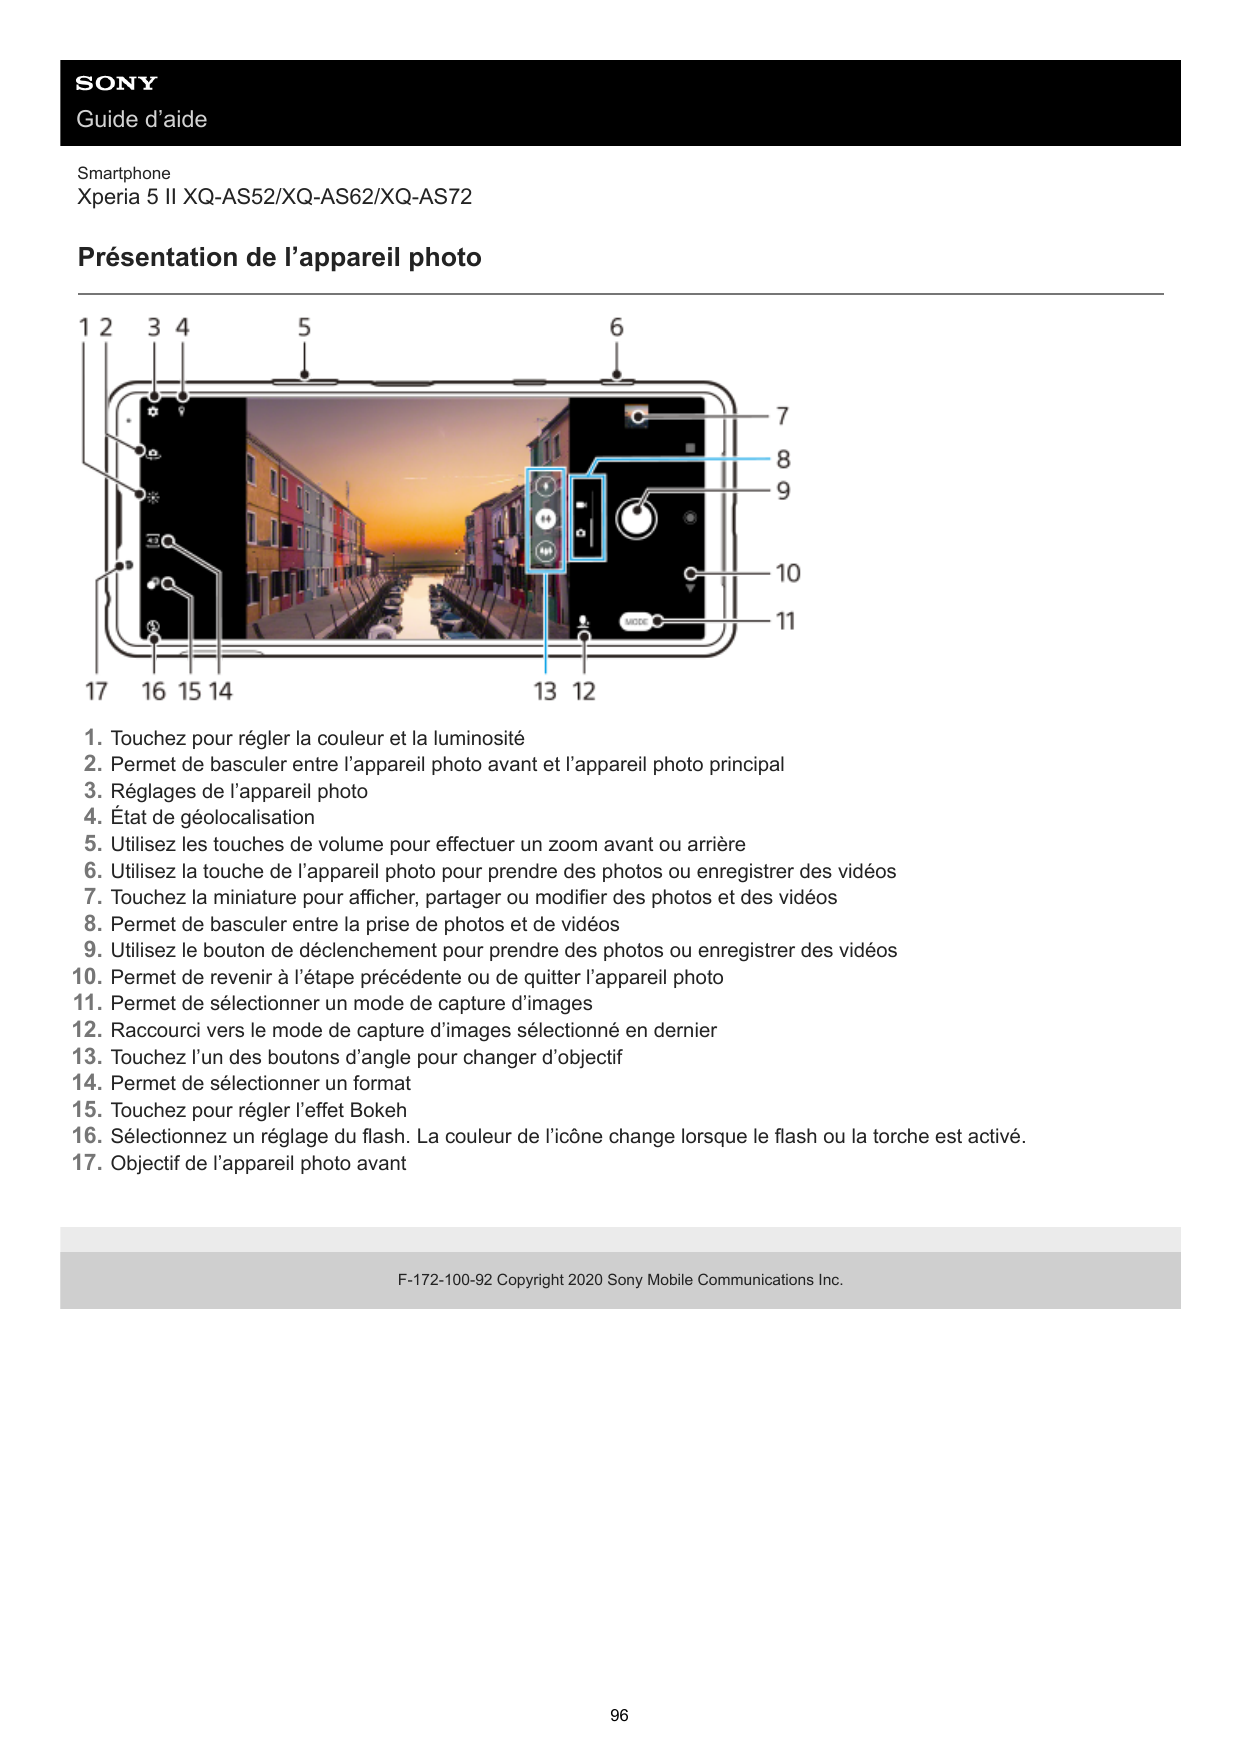 Guide d’aideSmartphoneXperia 5 II XQ-AS52/XQ-AS62/XQ-AS72Présentation de l’appareil photo1.2.3.4.5.6.7.8.9.10.11.12.13.14.15.16.